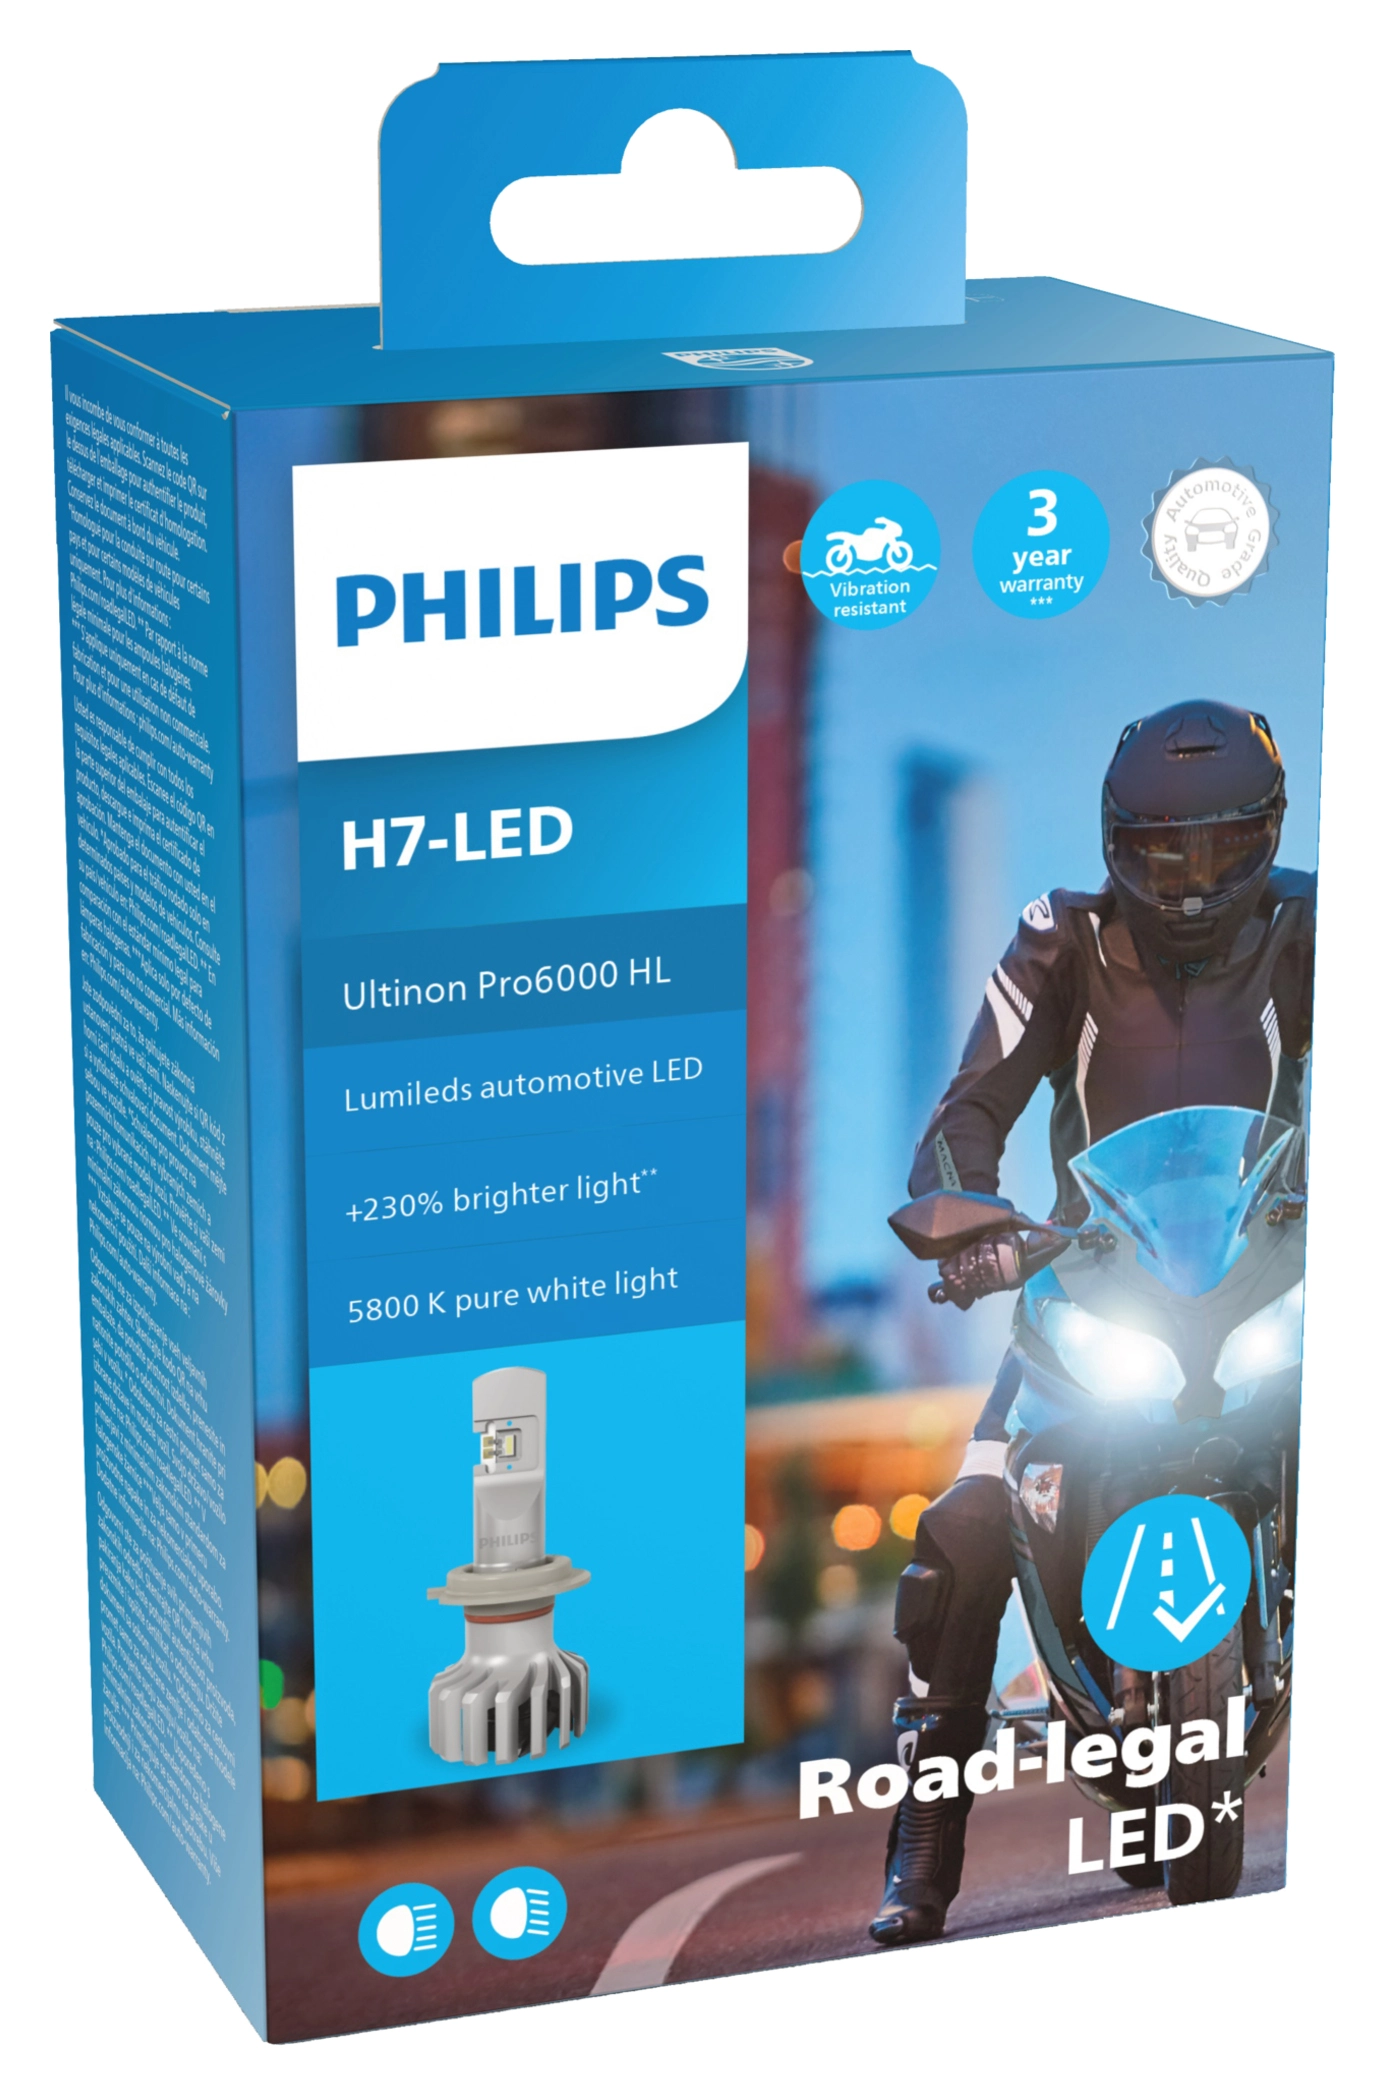 Philips Ultinon Pro6000 H7 LED Neu Versiegelt in Nordrhein